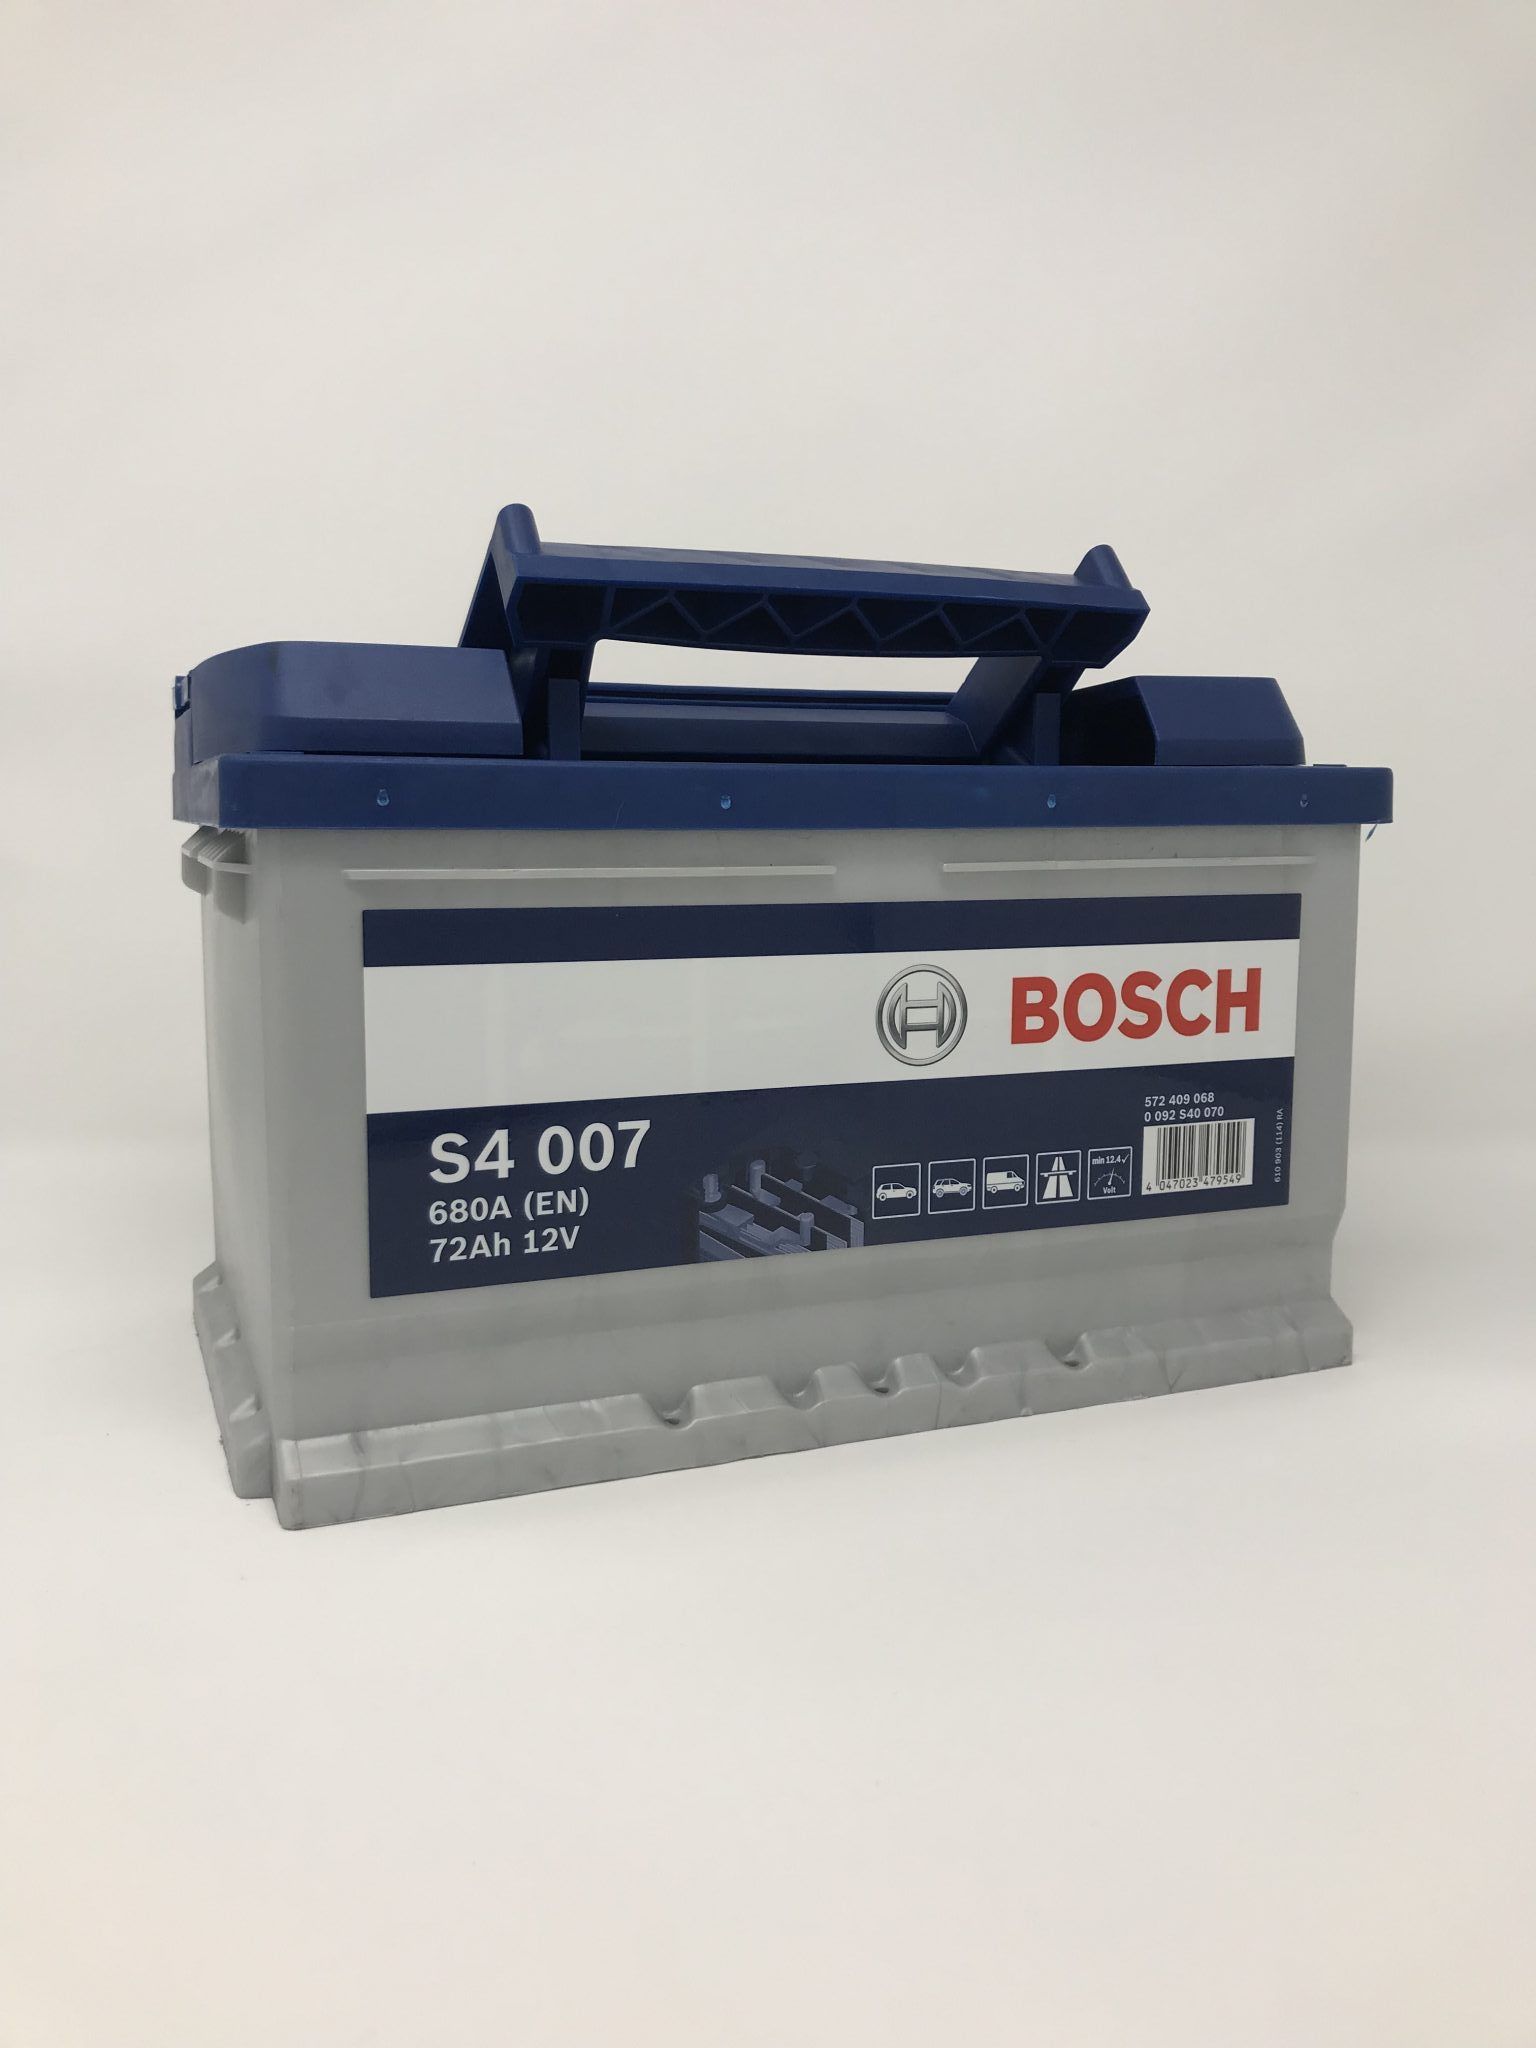 Porsche 964 Battery - Bosch S4 007 - Porsche Porsche Parts, 964 electrical,  battery - Parr